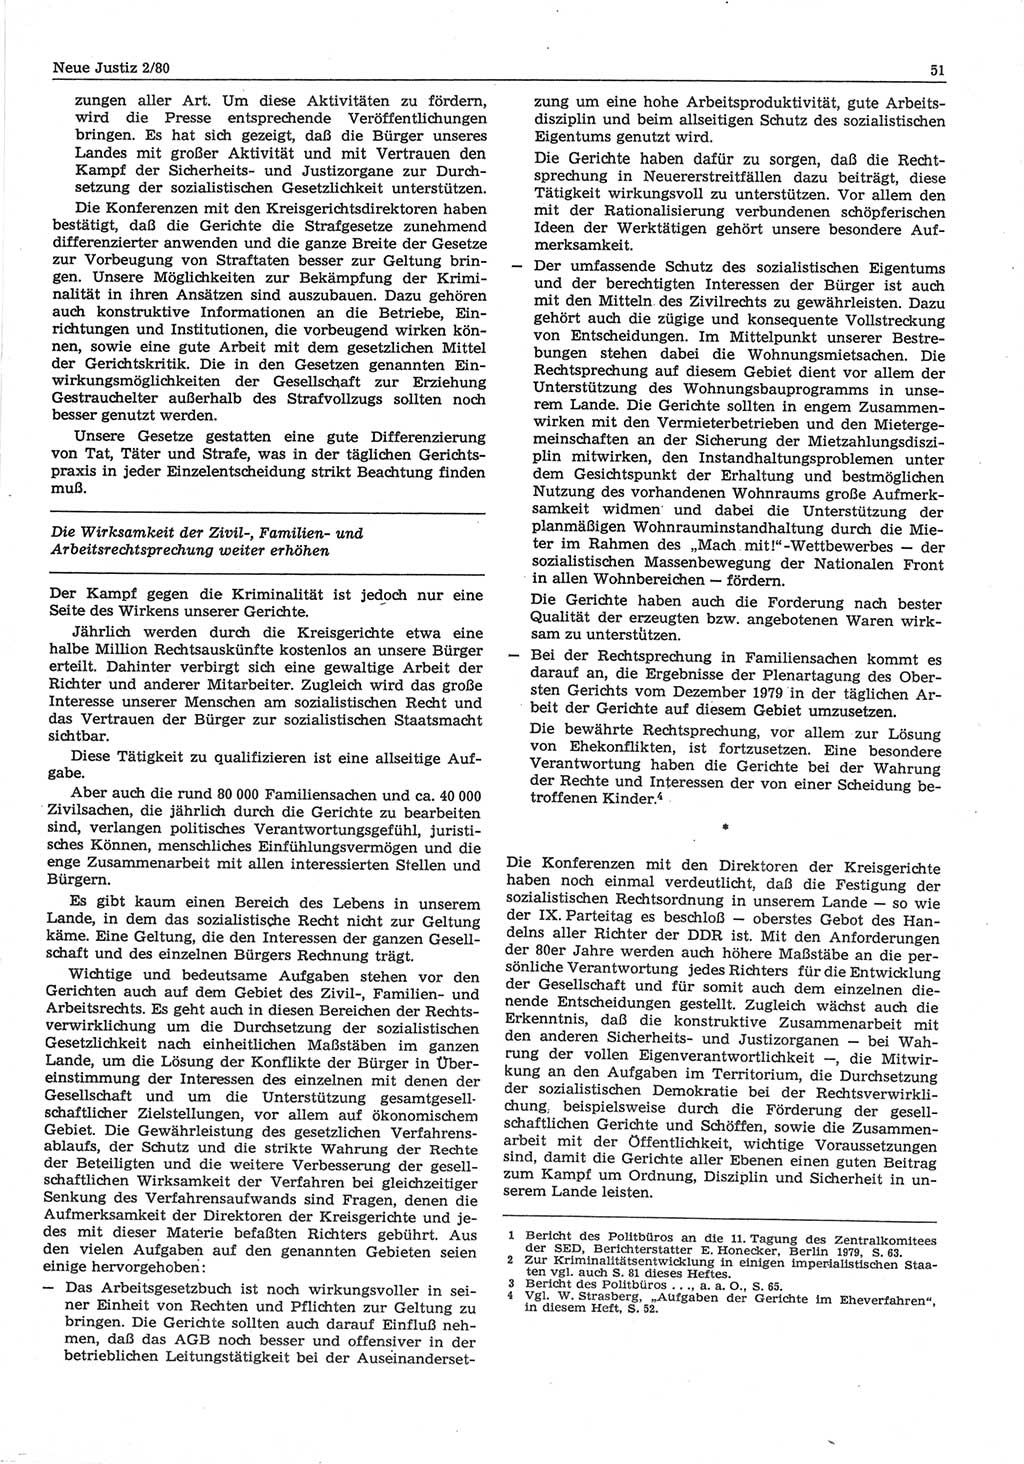 Neue Justiz (NJ), Zeitschrift für sozialistisches Recht und Gesetzlichkeit [Deutsche Demokratische Republik (DDR)], 34. Jahrgang 1980, Seite 51 (NJ DDR 1980, S. 51)